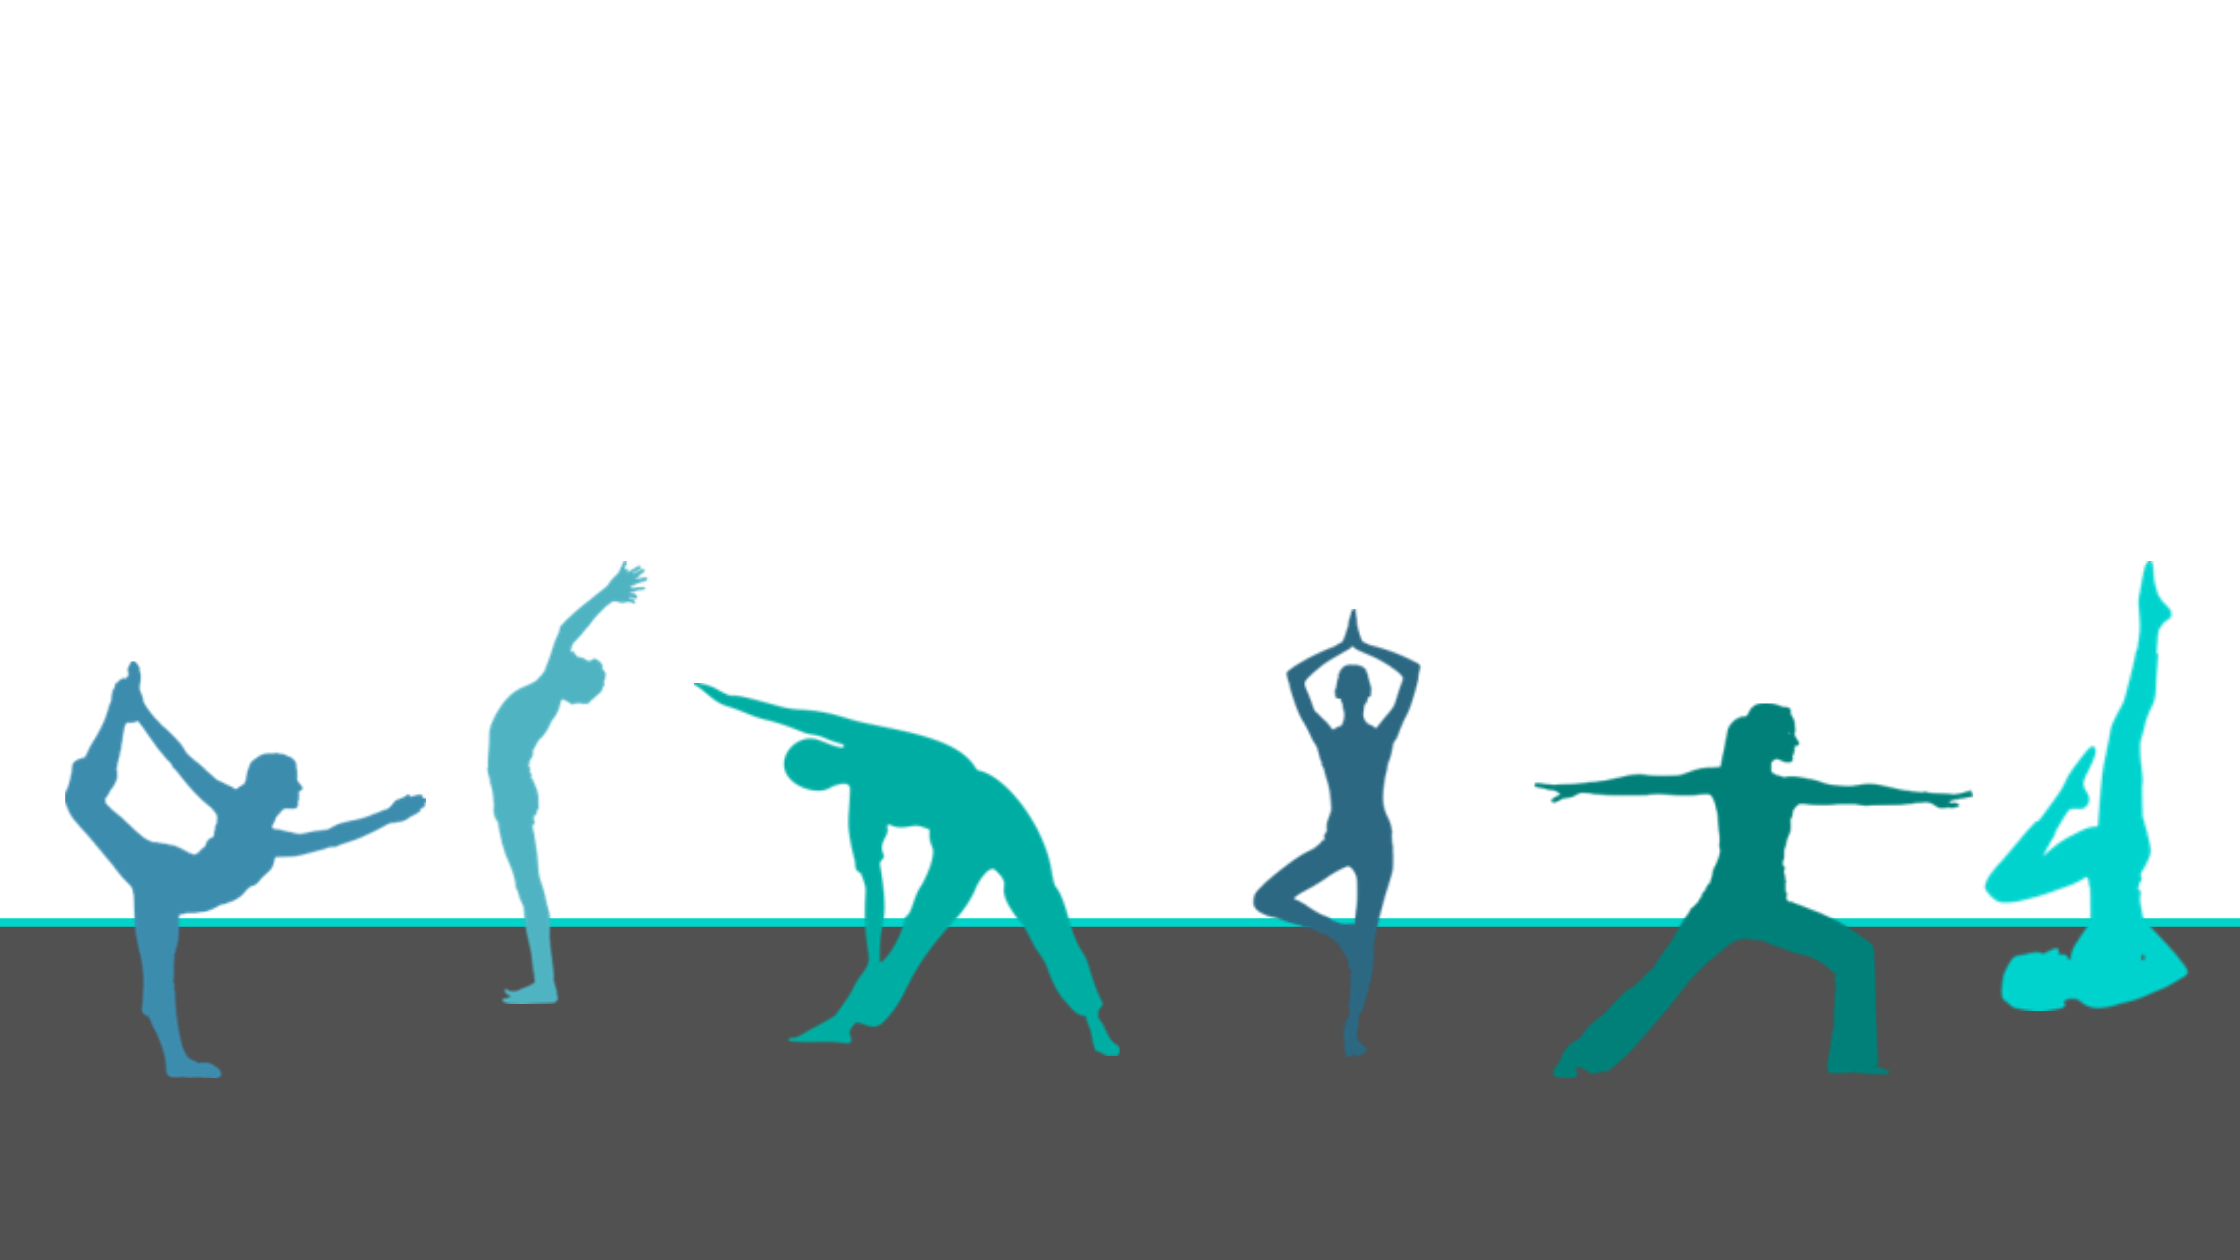 6 figuren in een yogahouding